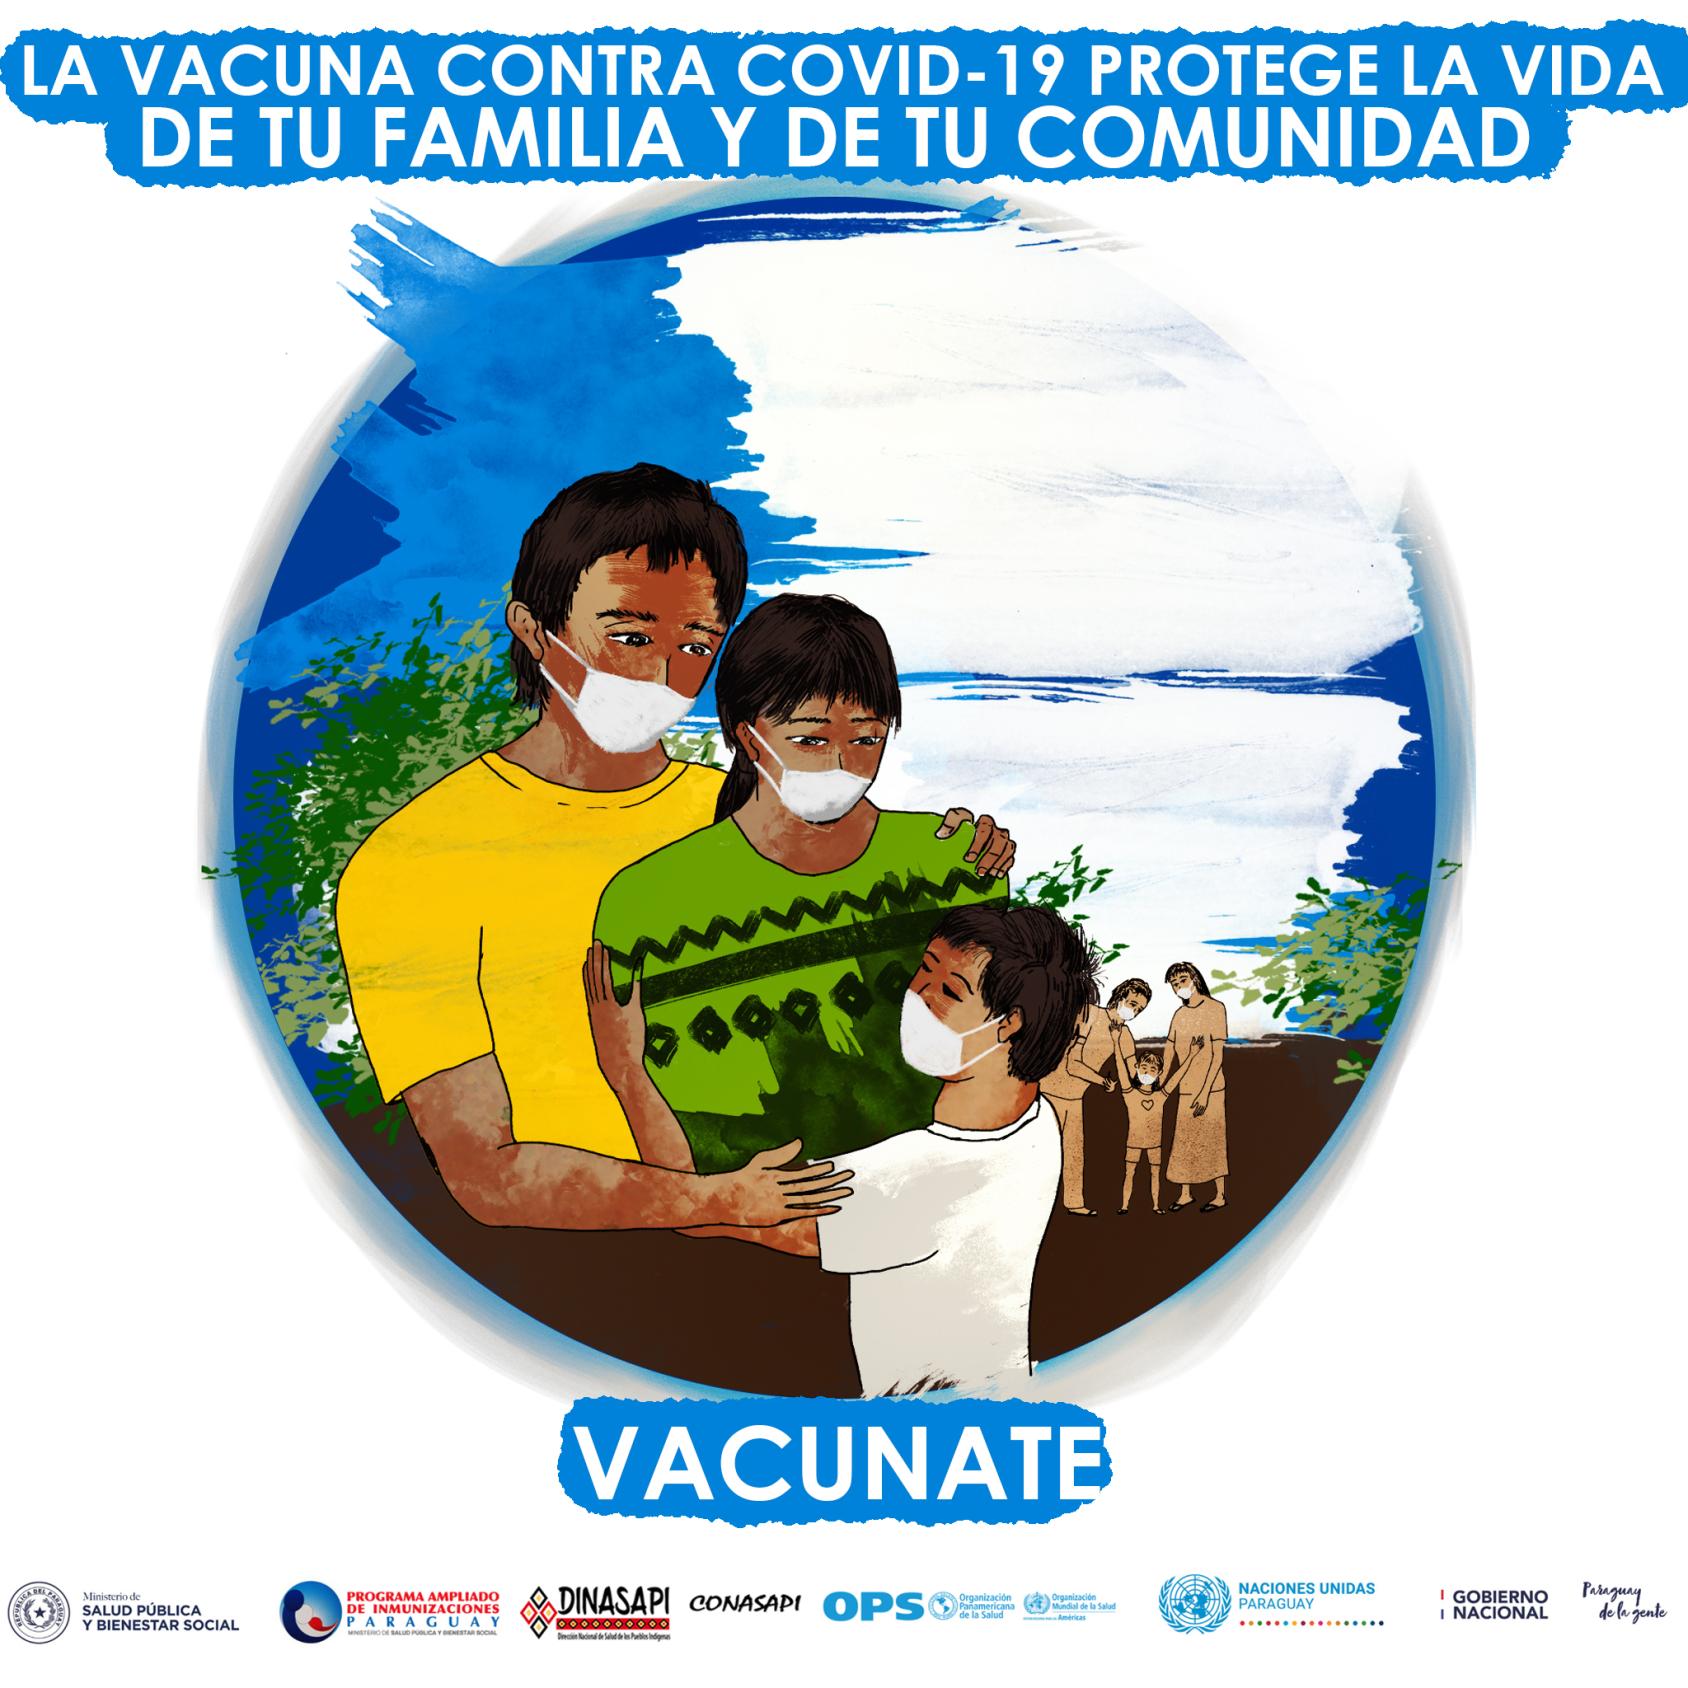 صورة كرتونية تشجع العائلات على تلقي اللقاح.